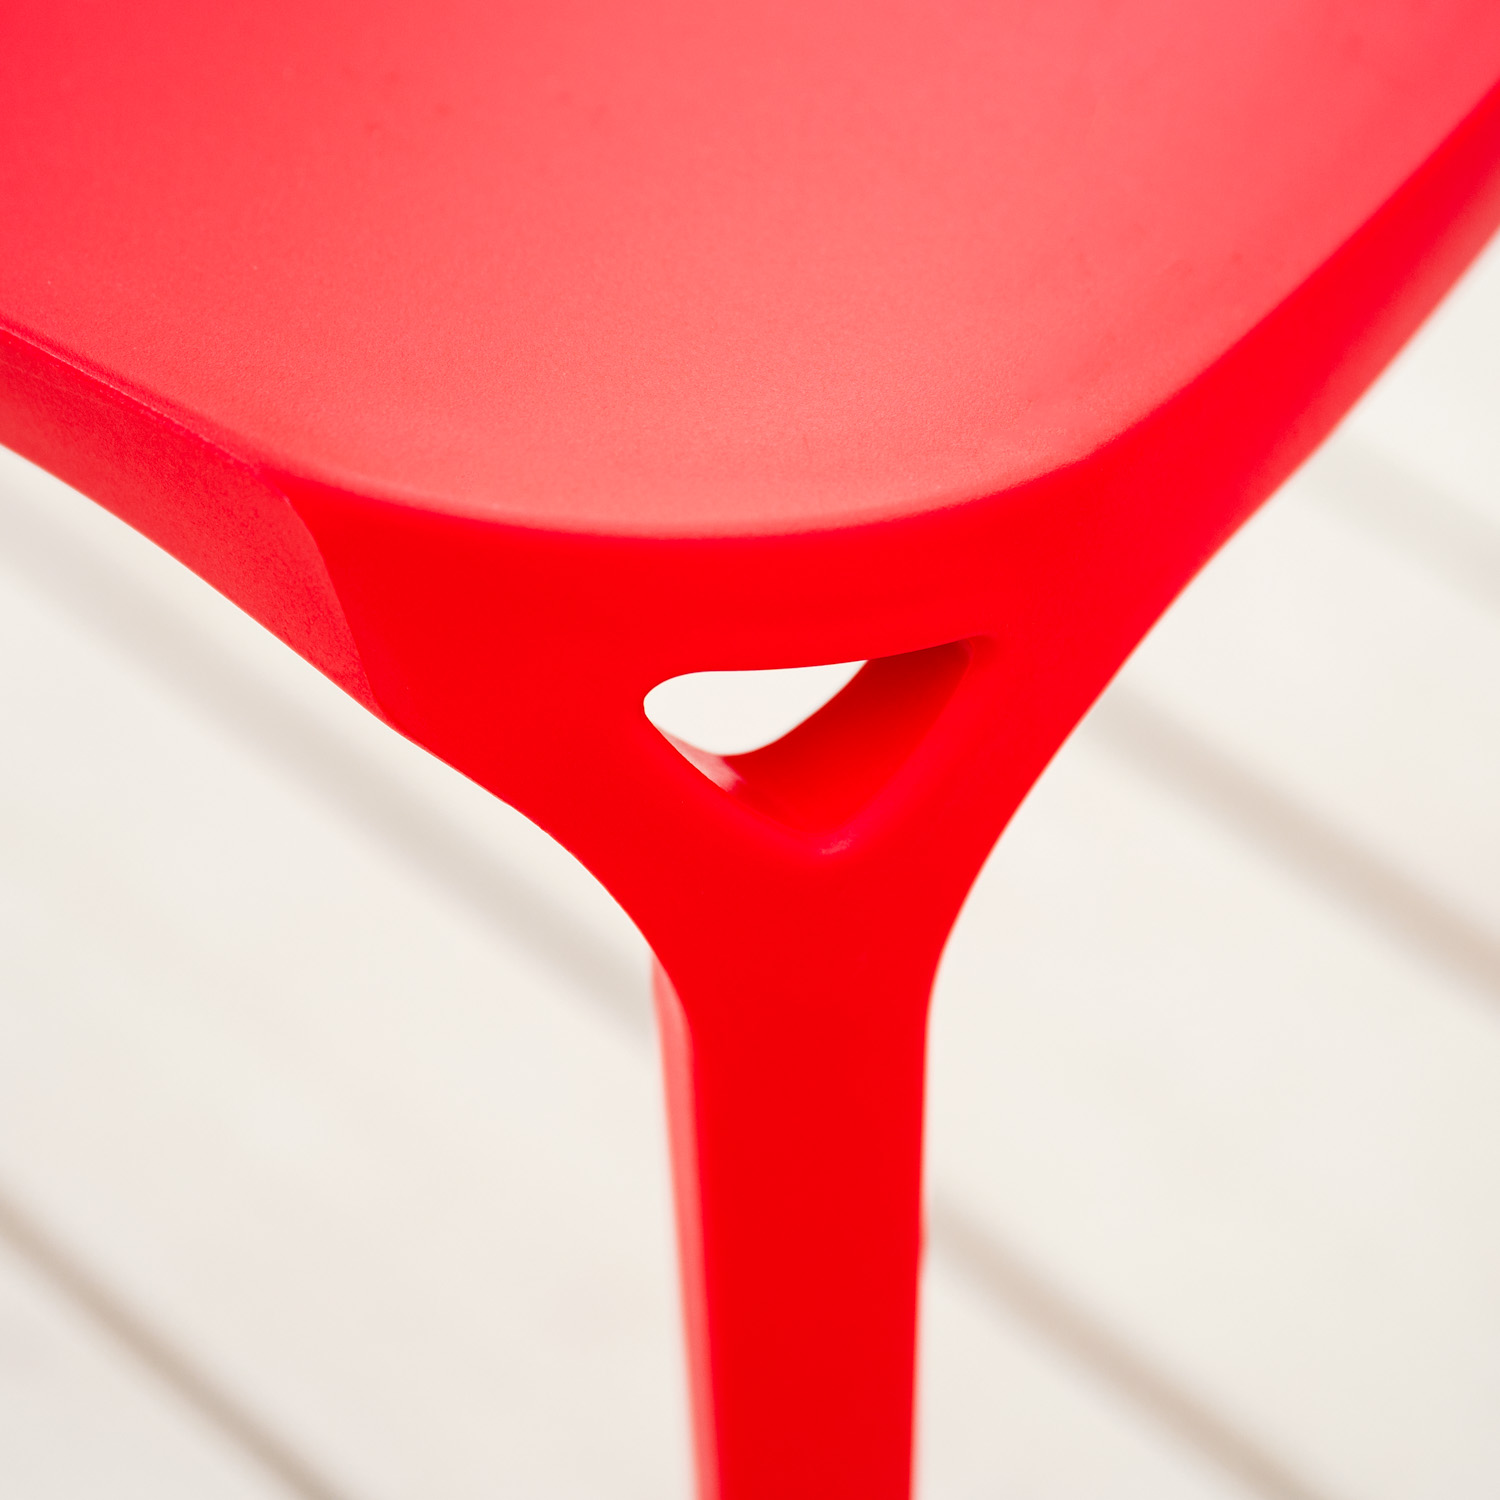 Chaise de jardin Lot de 6 Moderne Rouge Chaises design Plastique Chaises exterieur Chaises empilable Chaise de cuisine